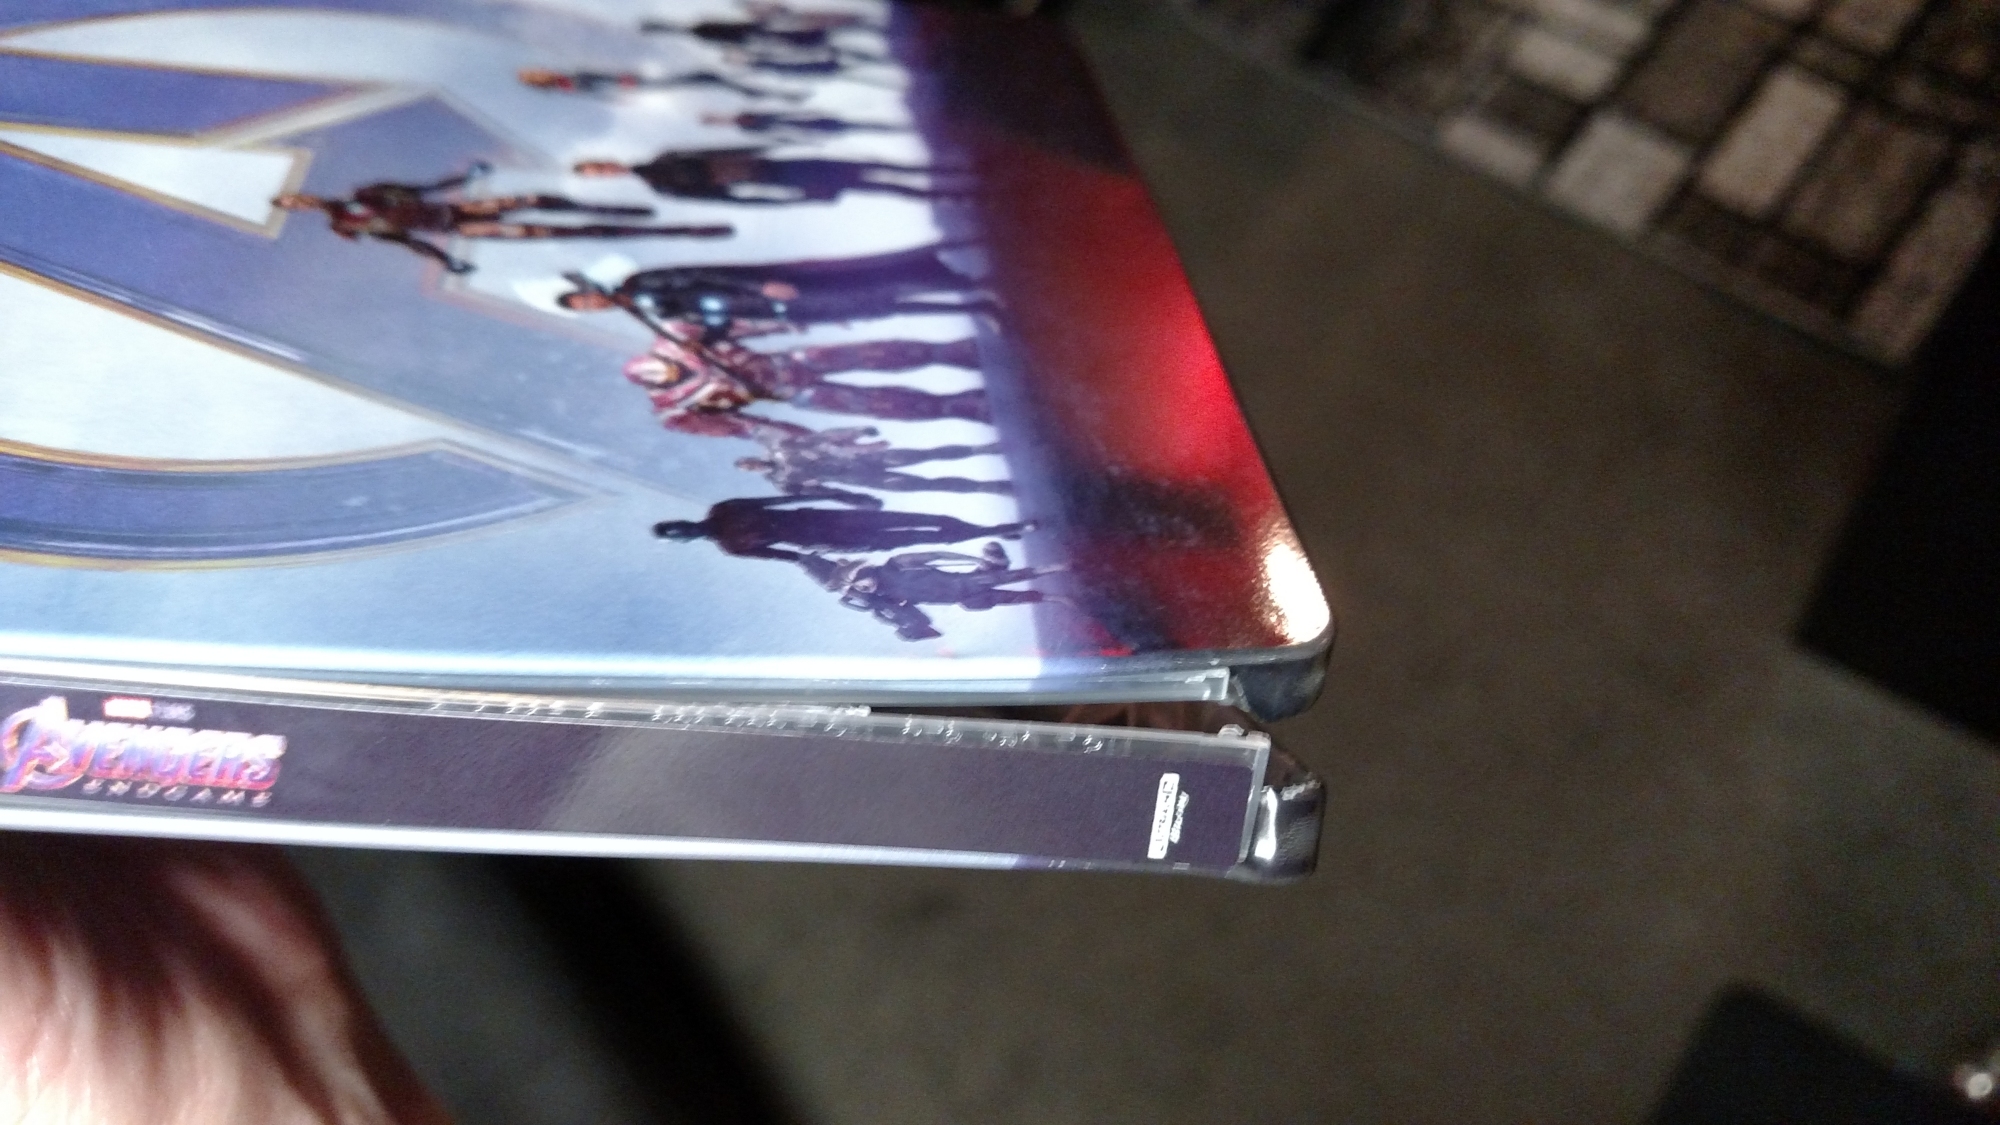 SteelBook Spine Damage